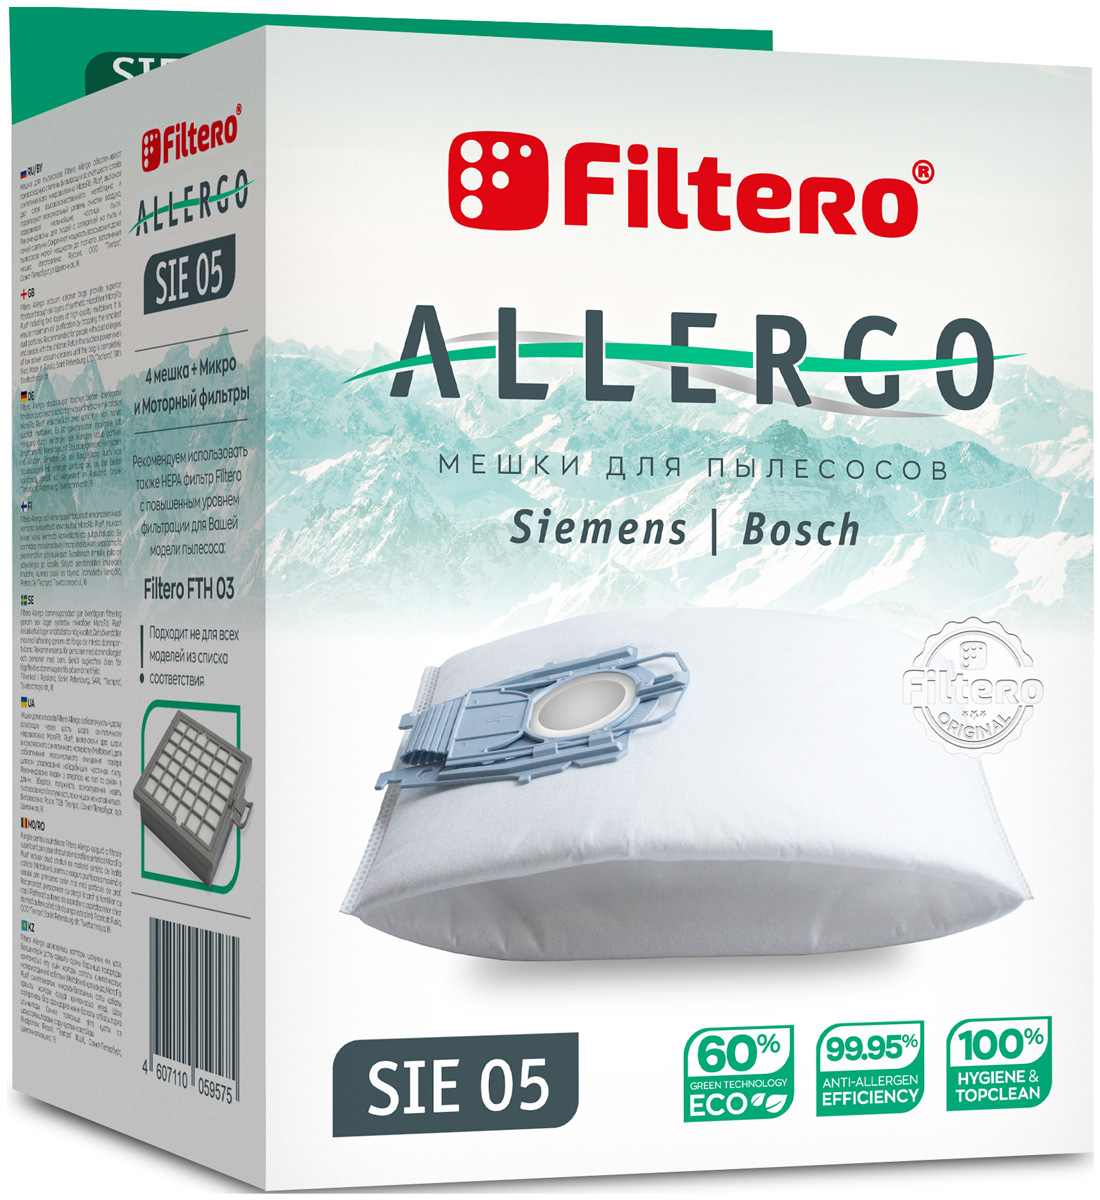 мешок для пылесоса filtero sie 05 4 allergo Пылесборники Filtero SIE 05 Allergo 4 шт. + моторный фильтр и микрофильтр